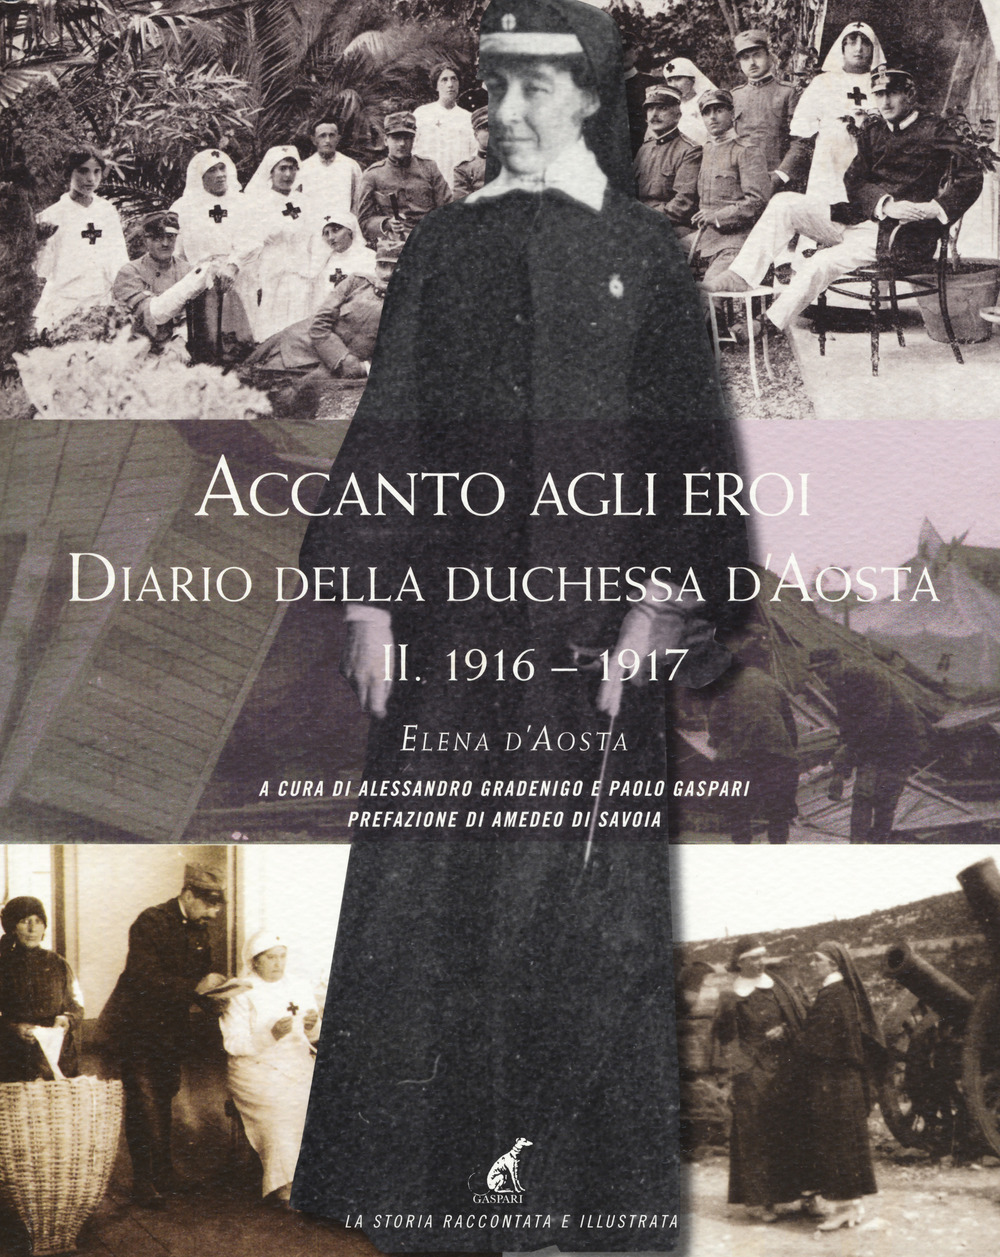 Accanto agli eroi. Diario della duchessa d'Aosta. Ediz. illustrata. Vol. 2: 1916-1917